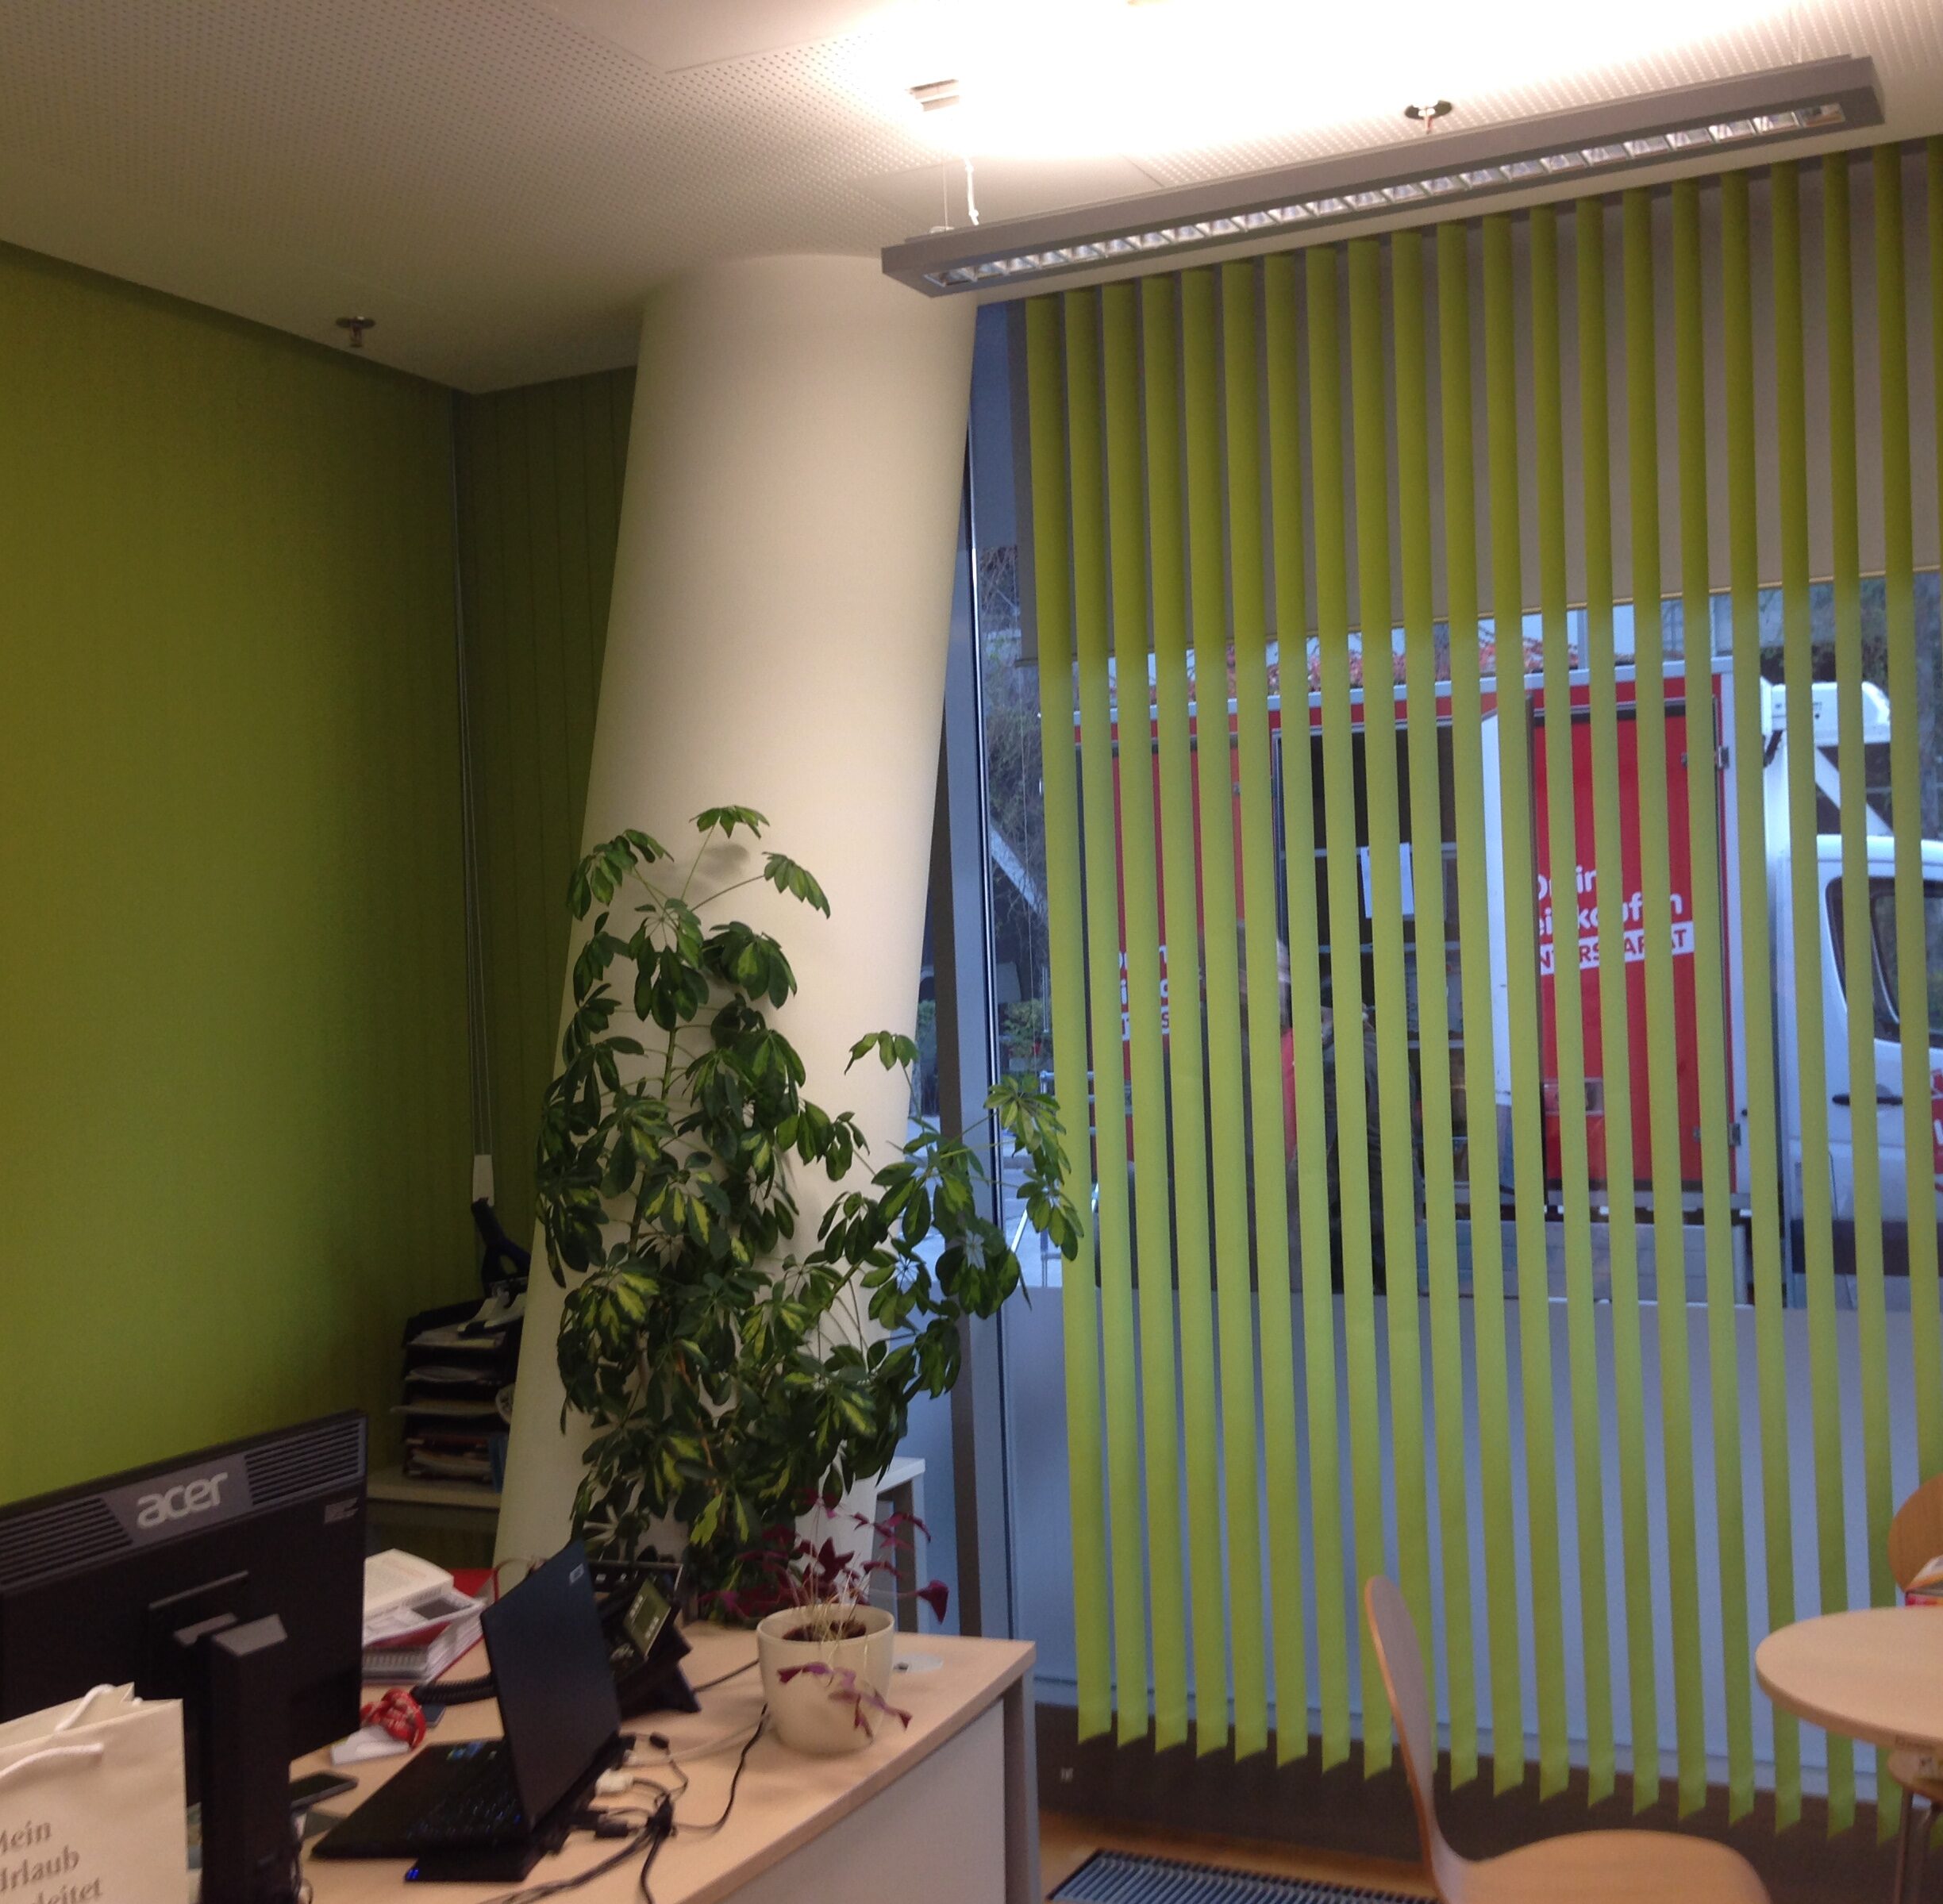 Die grüne Vertikaljalousie setzt das Büro farblich in Szene.